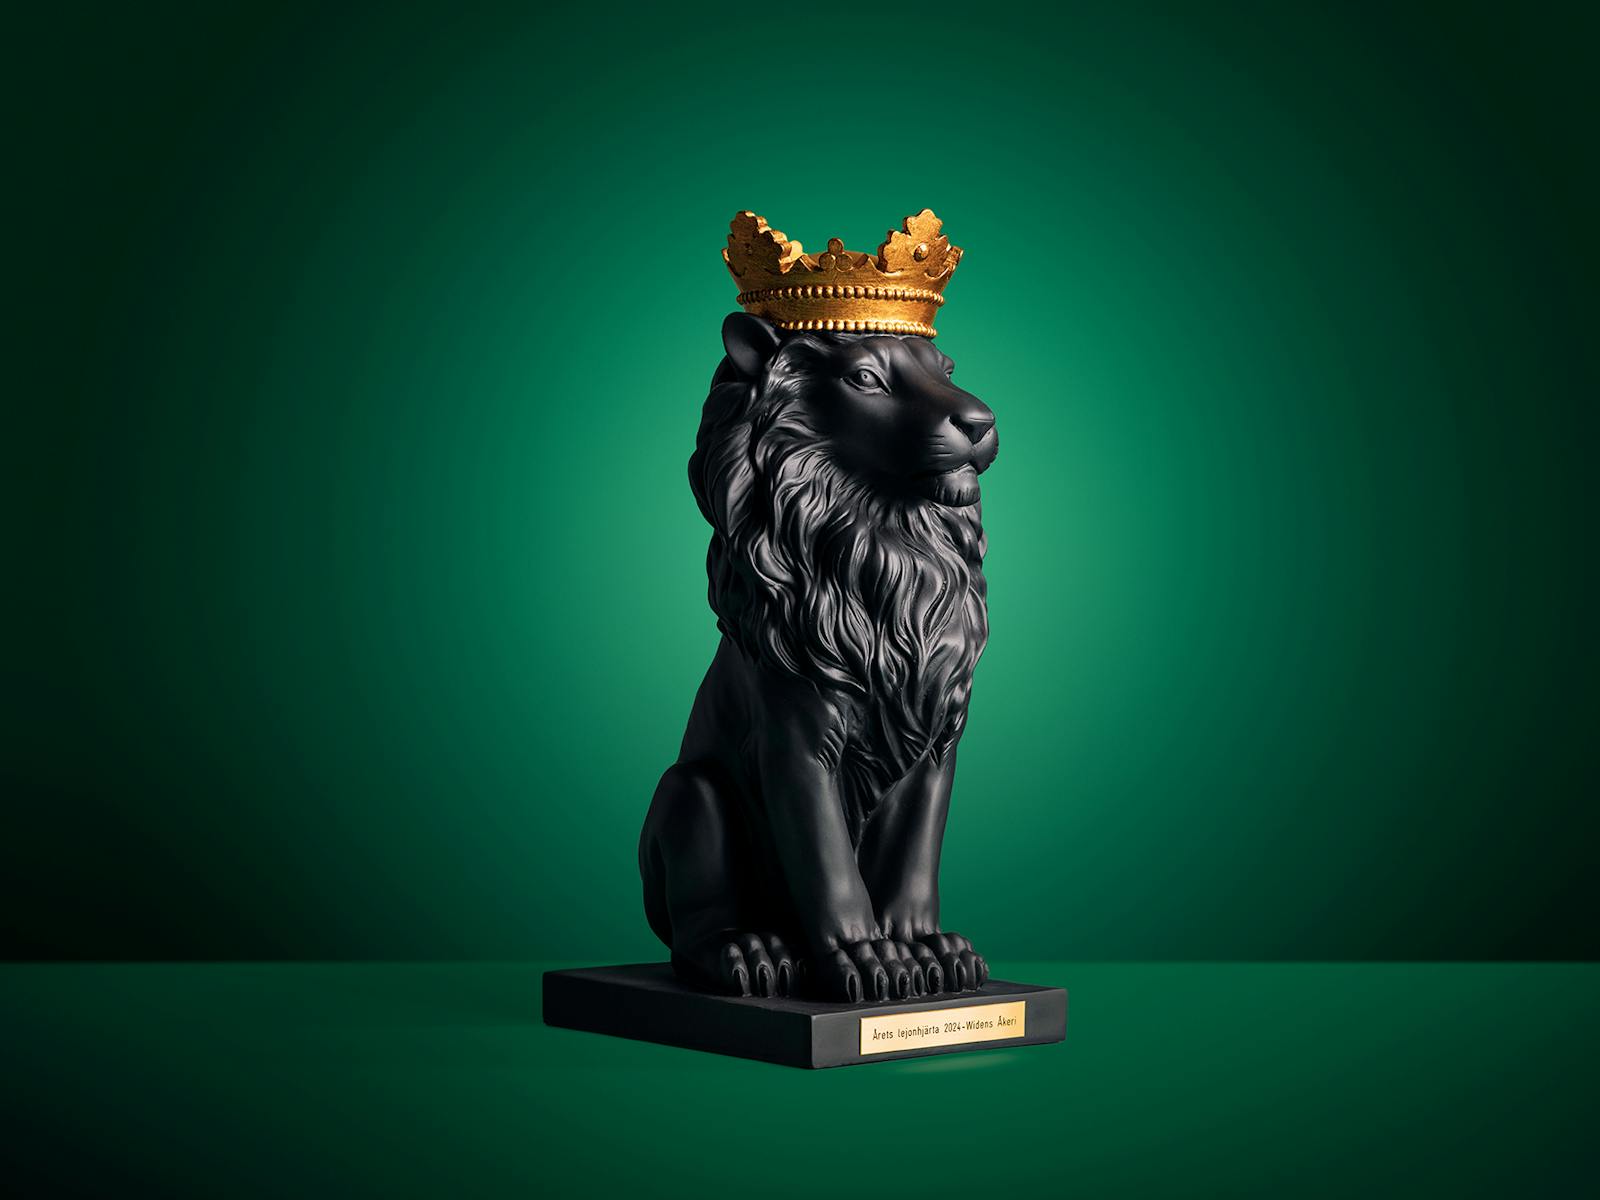 Lejonhjärta - svart lejon med guldkrona mot grön bakgrund.